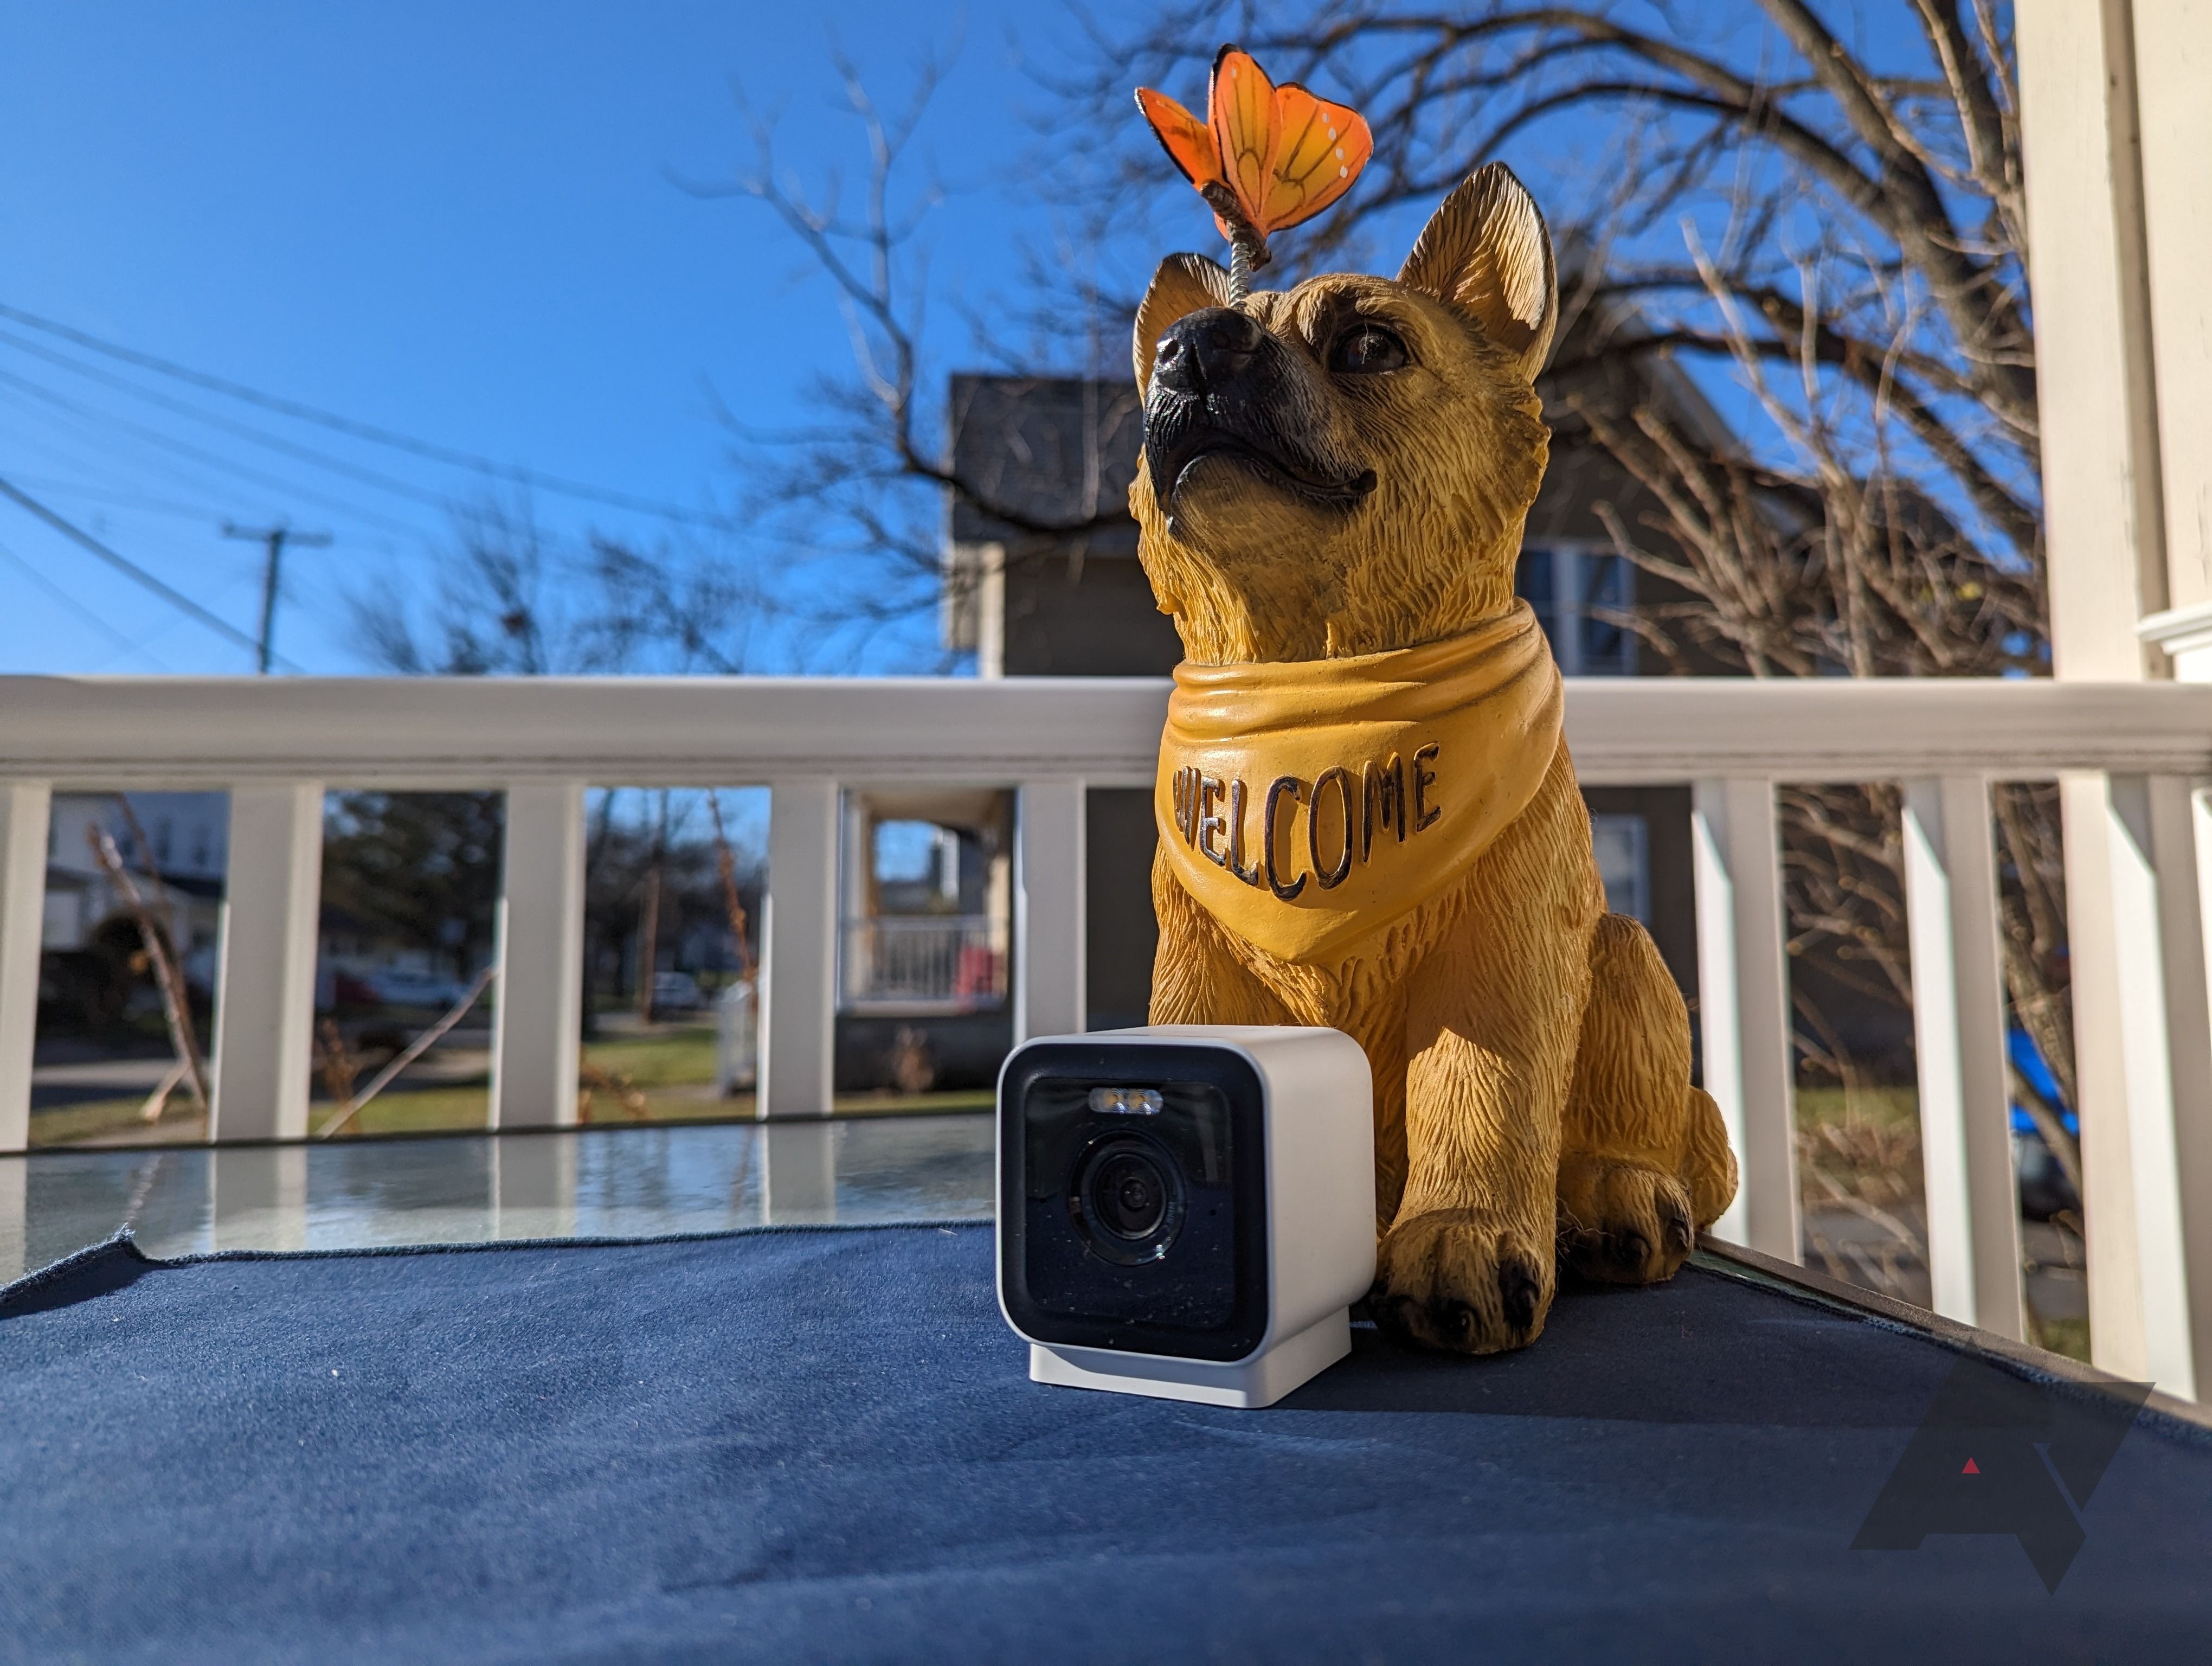 câmera de segurança colocada em tapete azul com estátua de cachorro ao ar livre